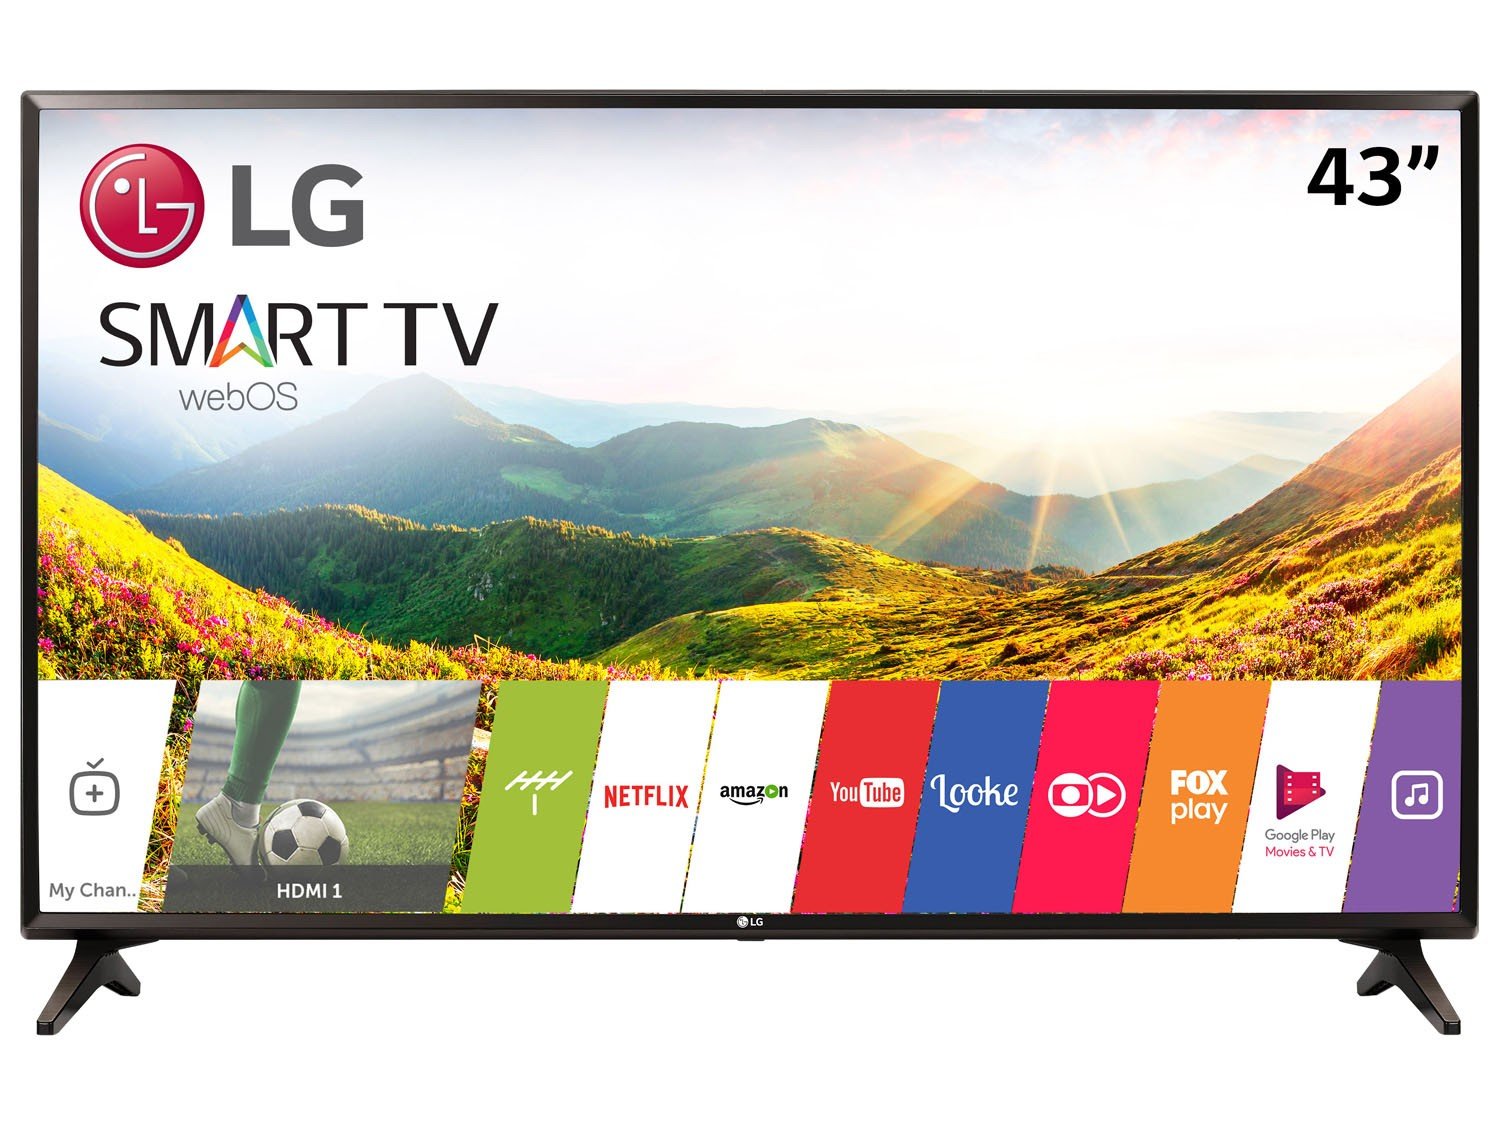 Como baixar aplicativo Smart TV Club na TV LG SMART